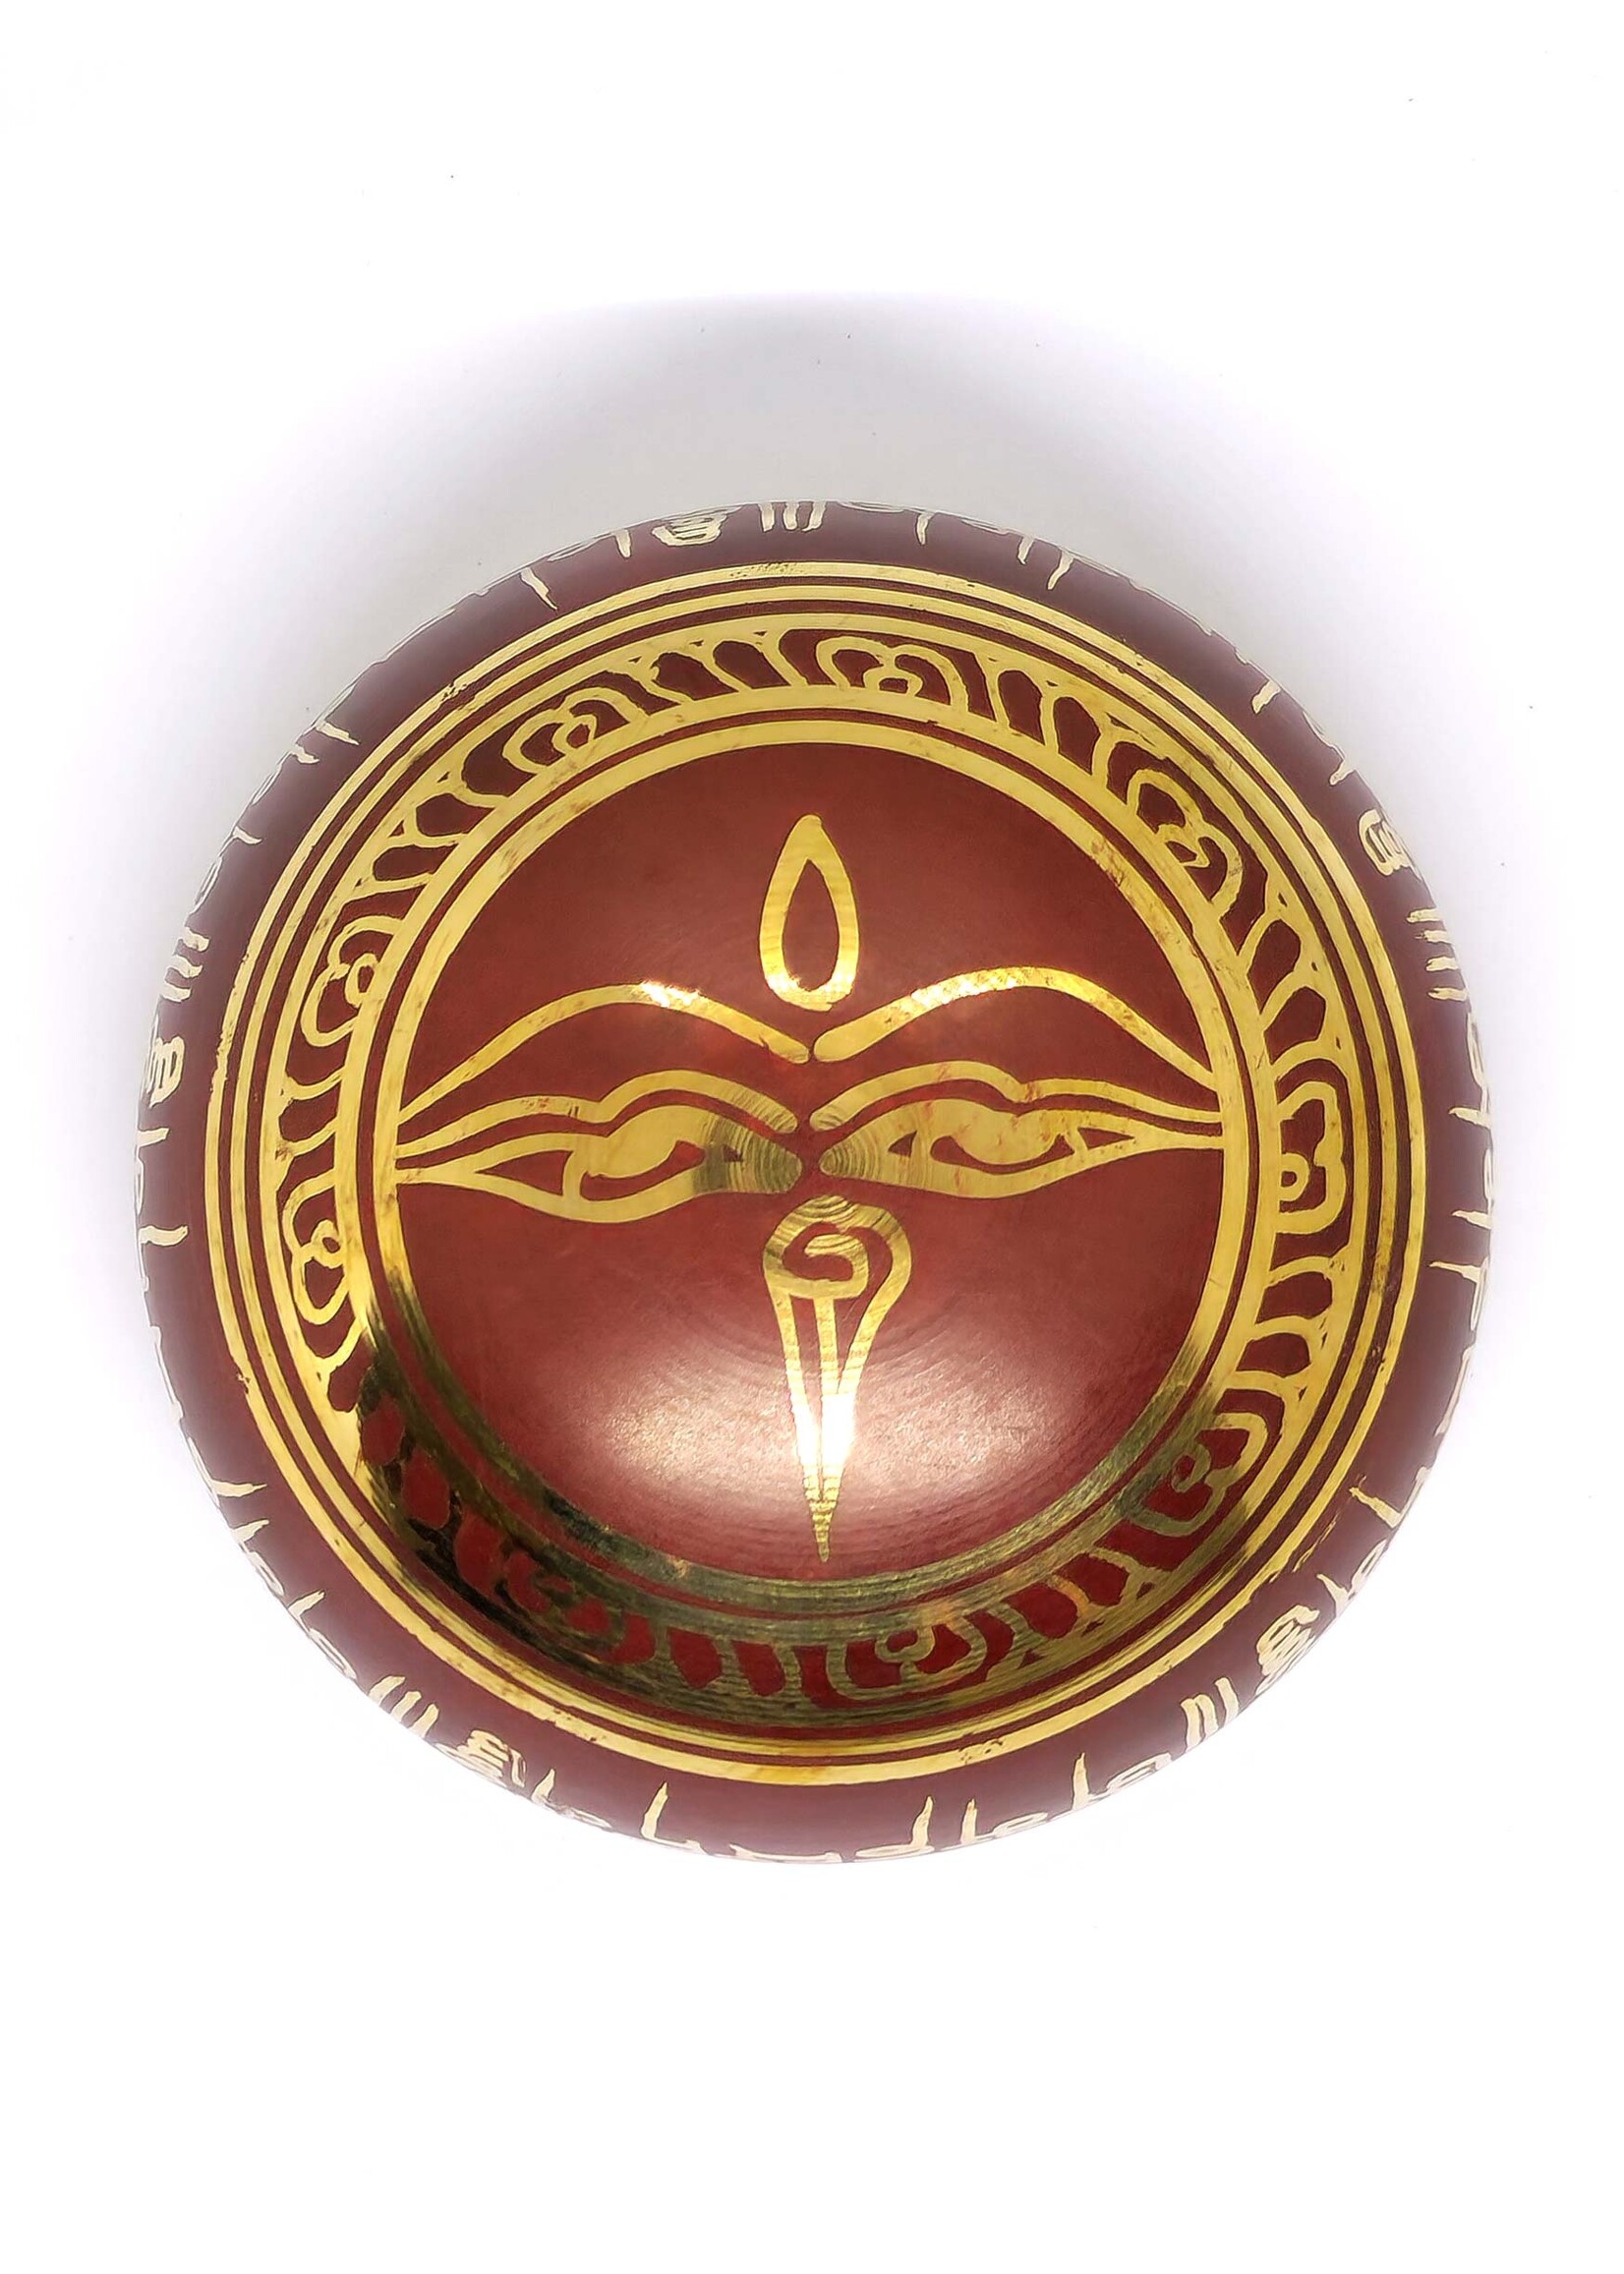 Ciotola di canto tibetano Mantra, 3 pezzi, rossa, in ottone, Ø 8cm, 190g